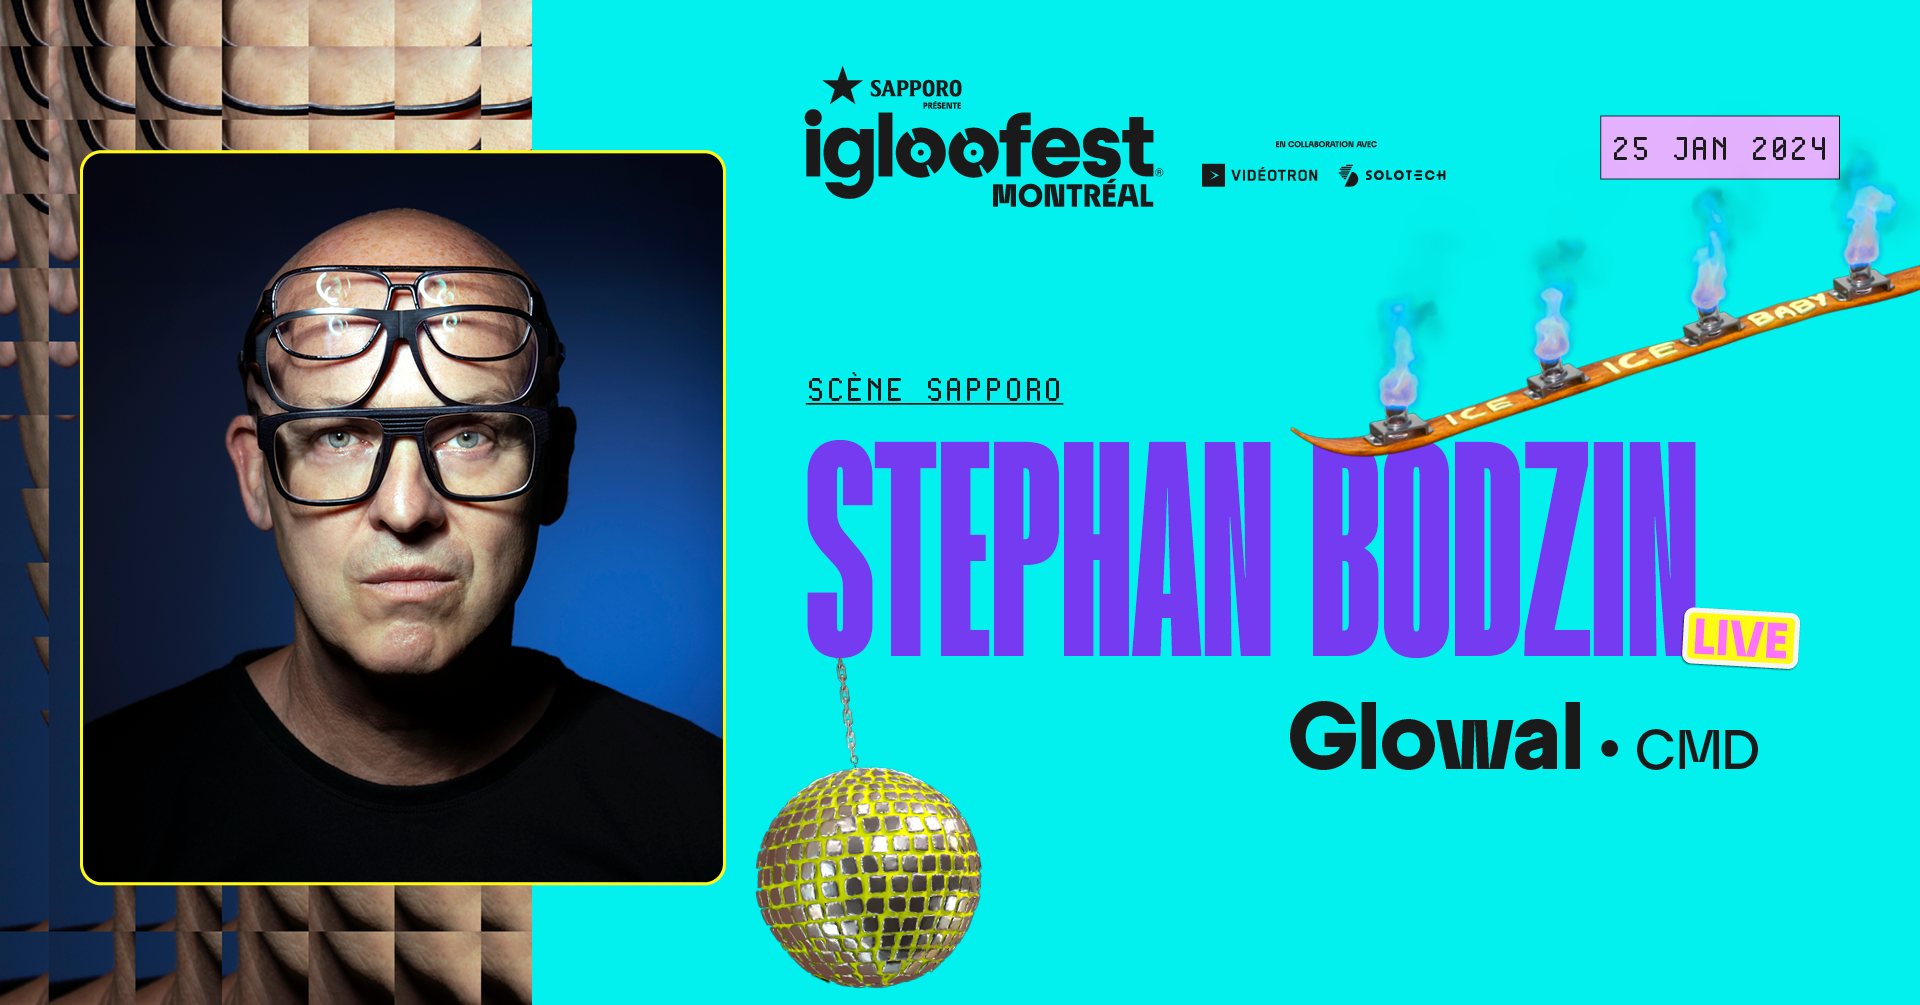 Igloofest MTL#4: Stephan Bodzin (Live), Glowal - Página frontal